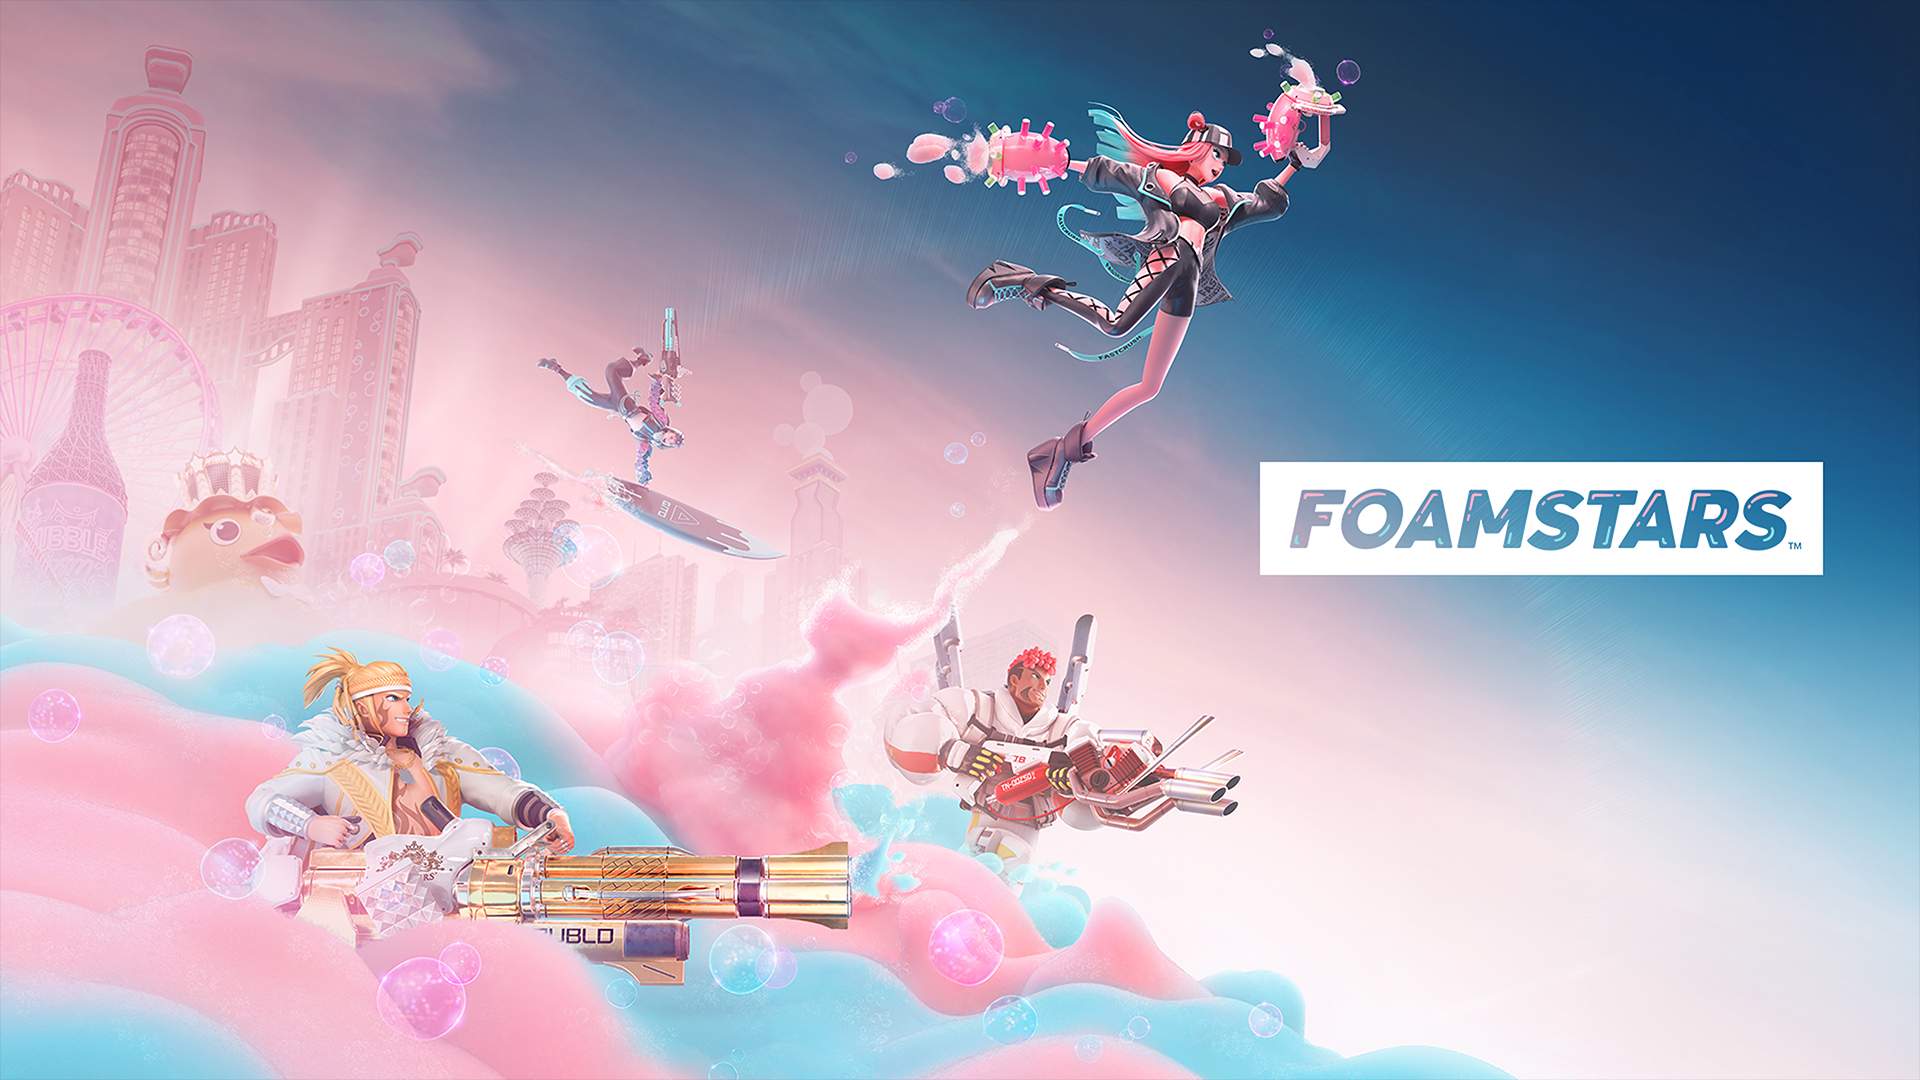 4 personnages émergent d'une mer de mousse bleu & rose sur fond de paysage urbain & logo FOAMSTARS